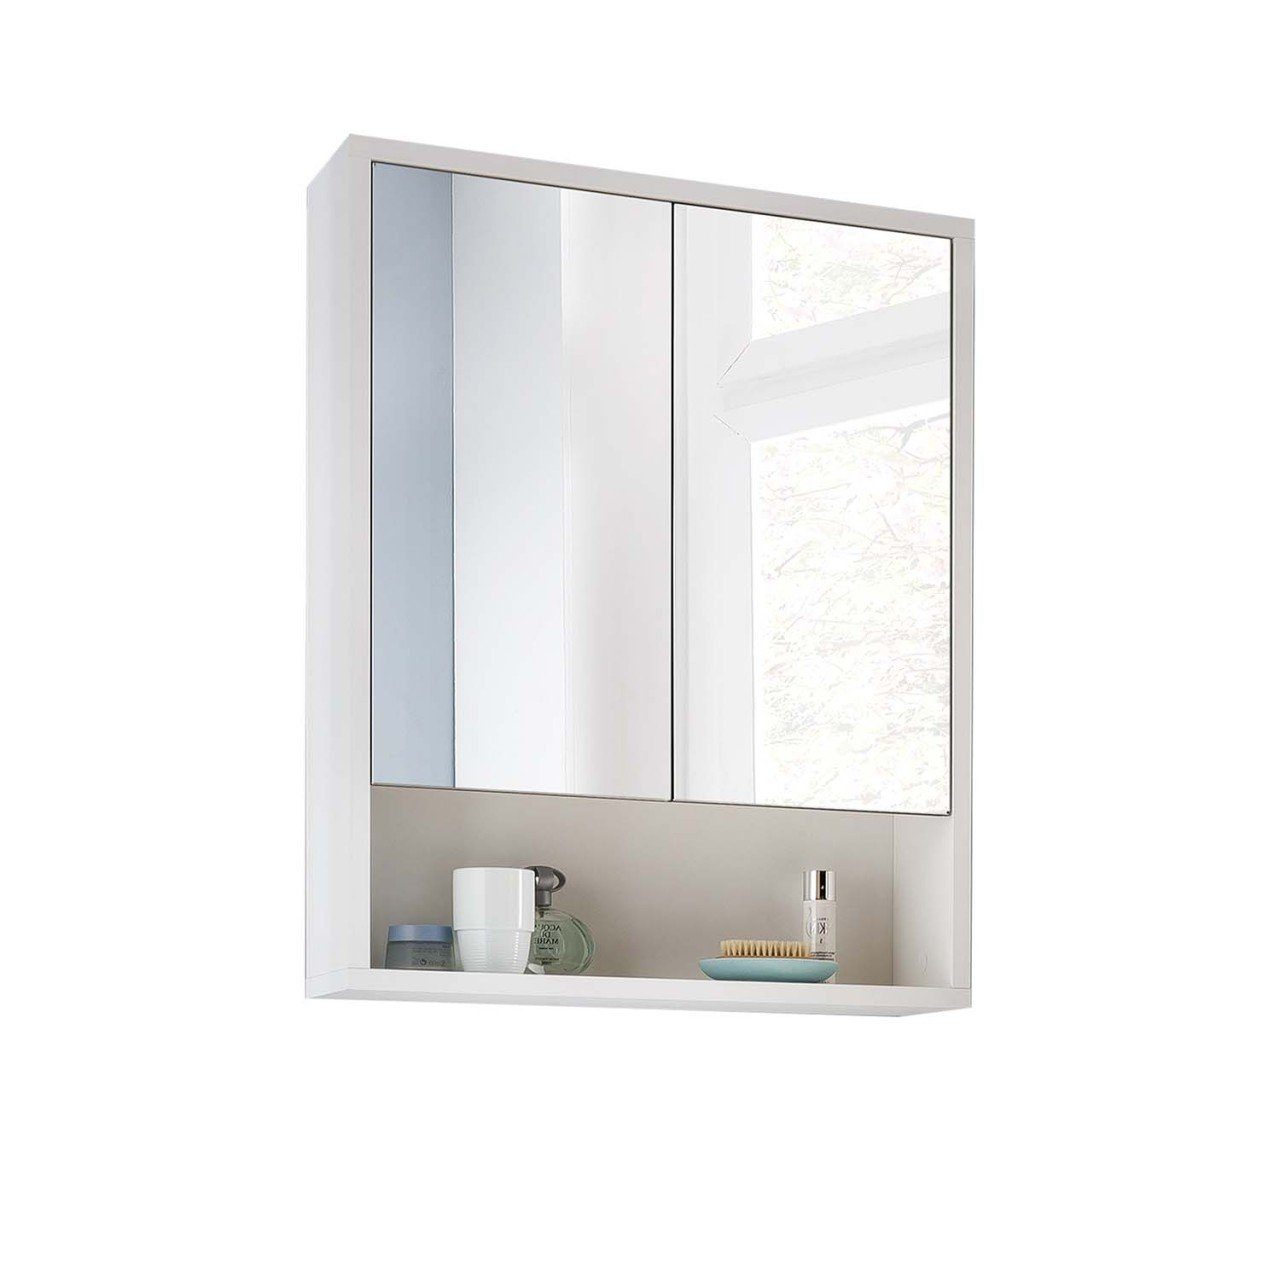 Sunset Badezimmerspiegelschrank Hometrend Spiegelschrank